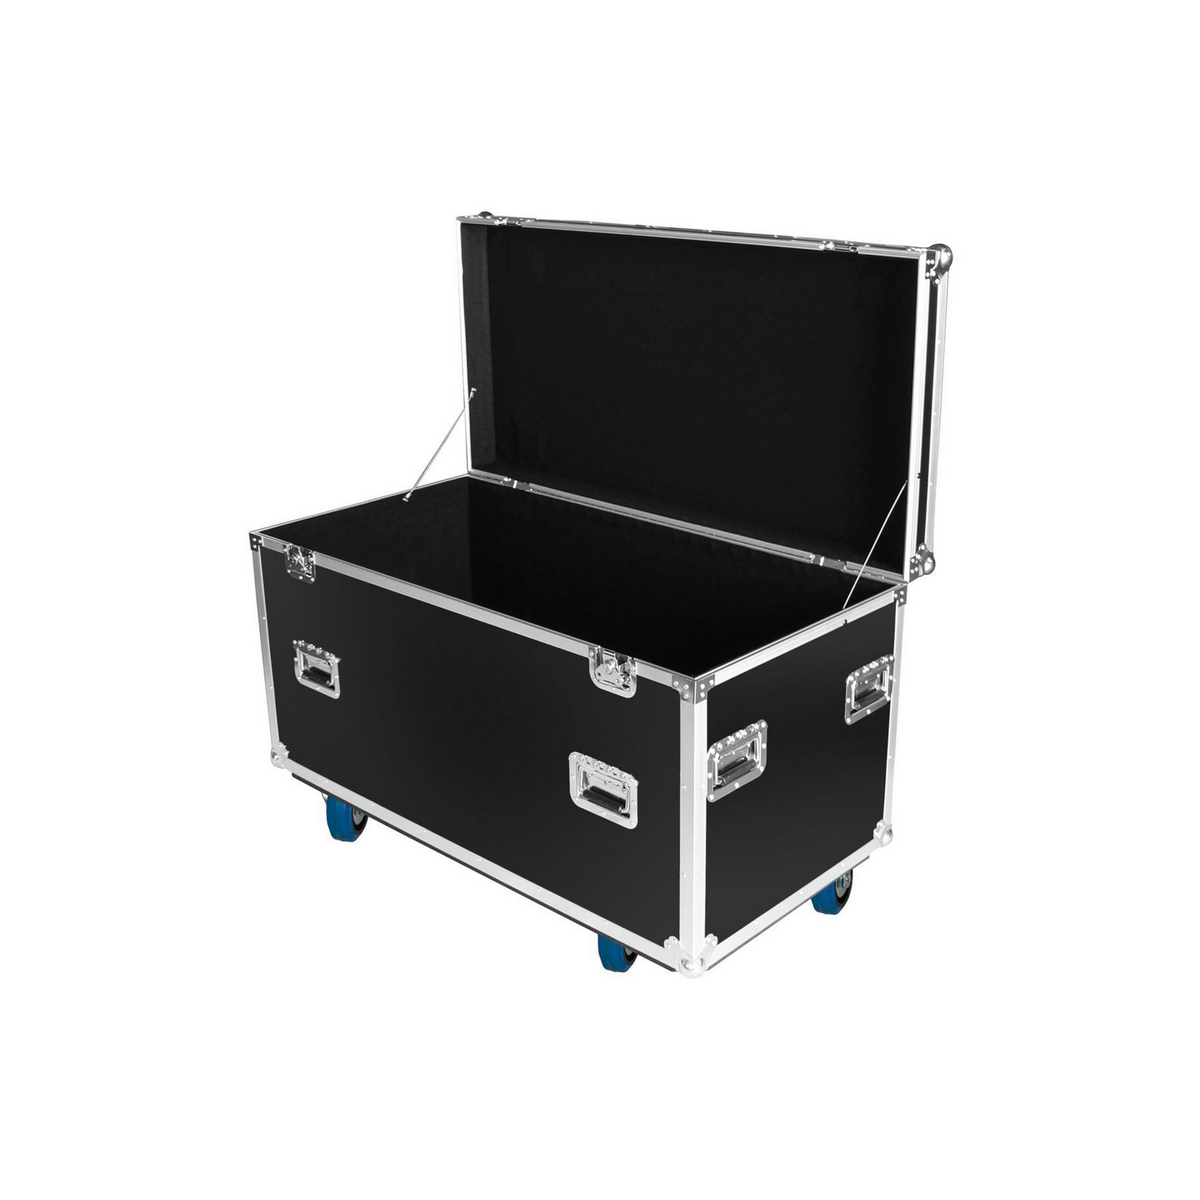 Flight cases utilitaires - Power Acoustics - Flight cases - FT LXX MK2